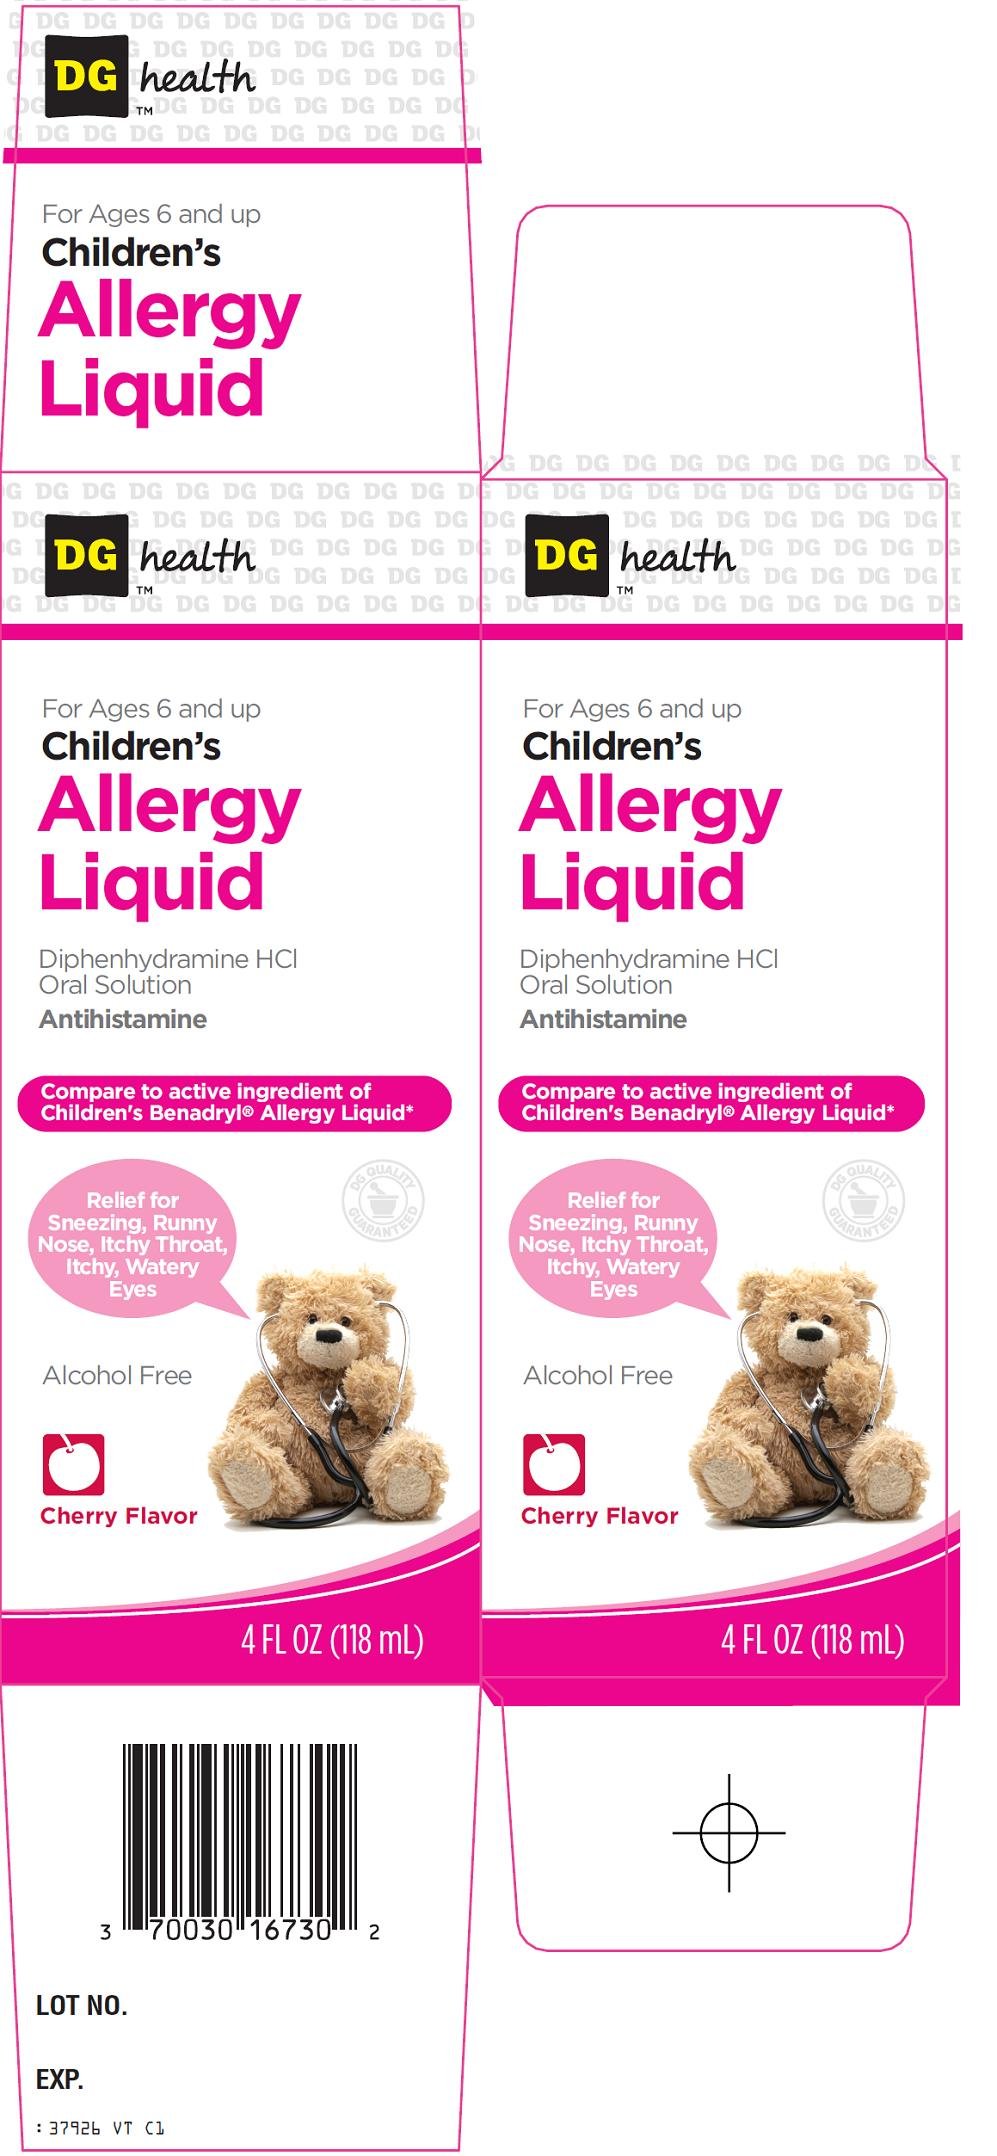 Children's Allergy Liquid Carton Image 1